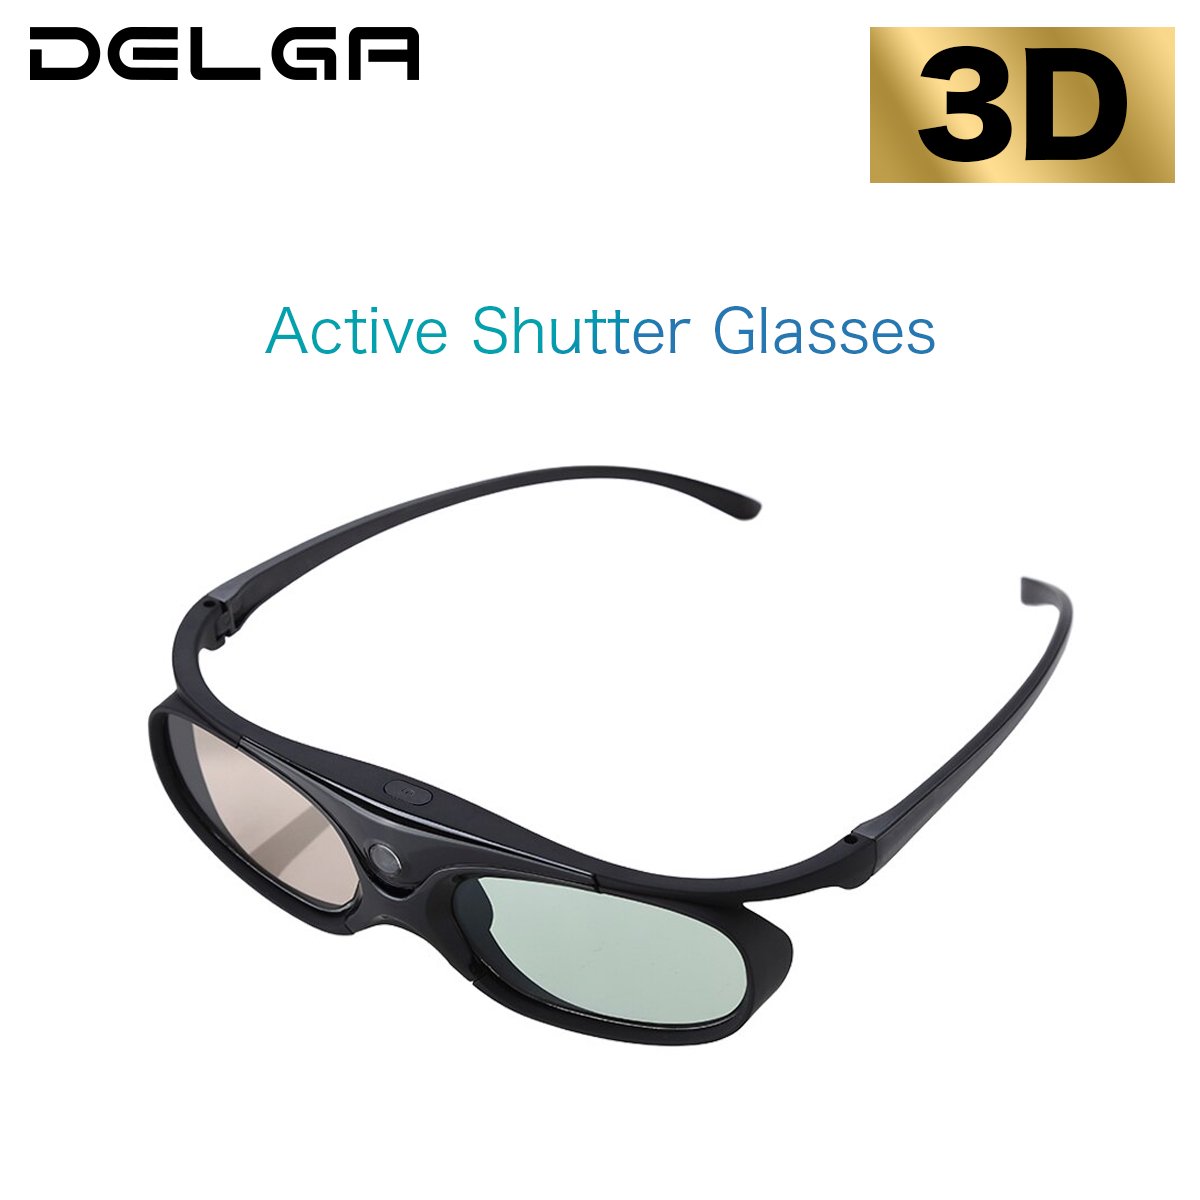 DLP プロジェクター DELGA 専用 3D メガネ Active Shutter Glasses STYLISH JAPAN gass0902 -  STYLISH JAPANオフィシャル店【スタイリッシュジャパン】美しく健康的なカラダづくりをサポート